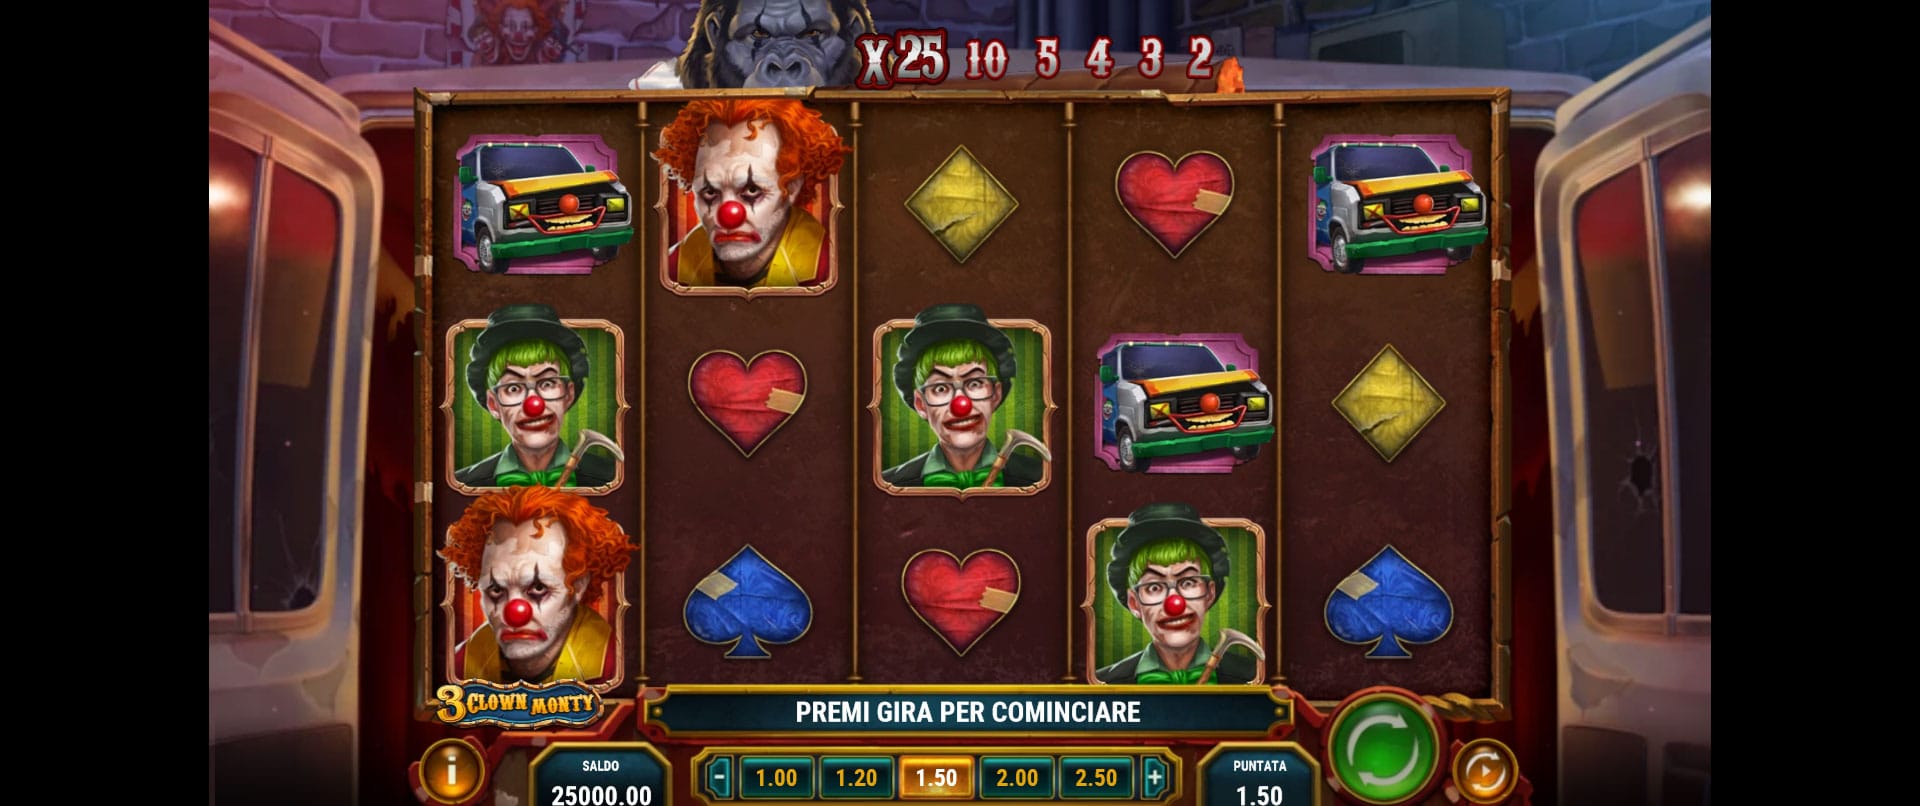 griglia di gioco della slot machine 3 clown monty